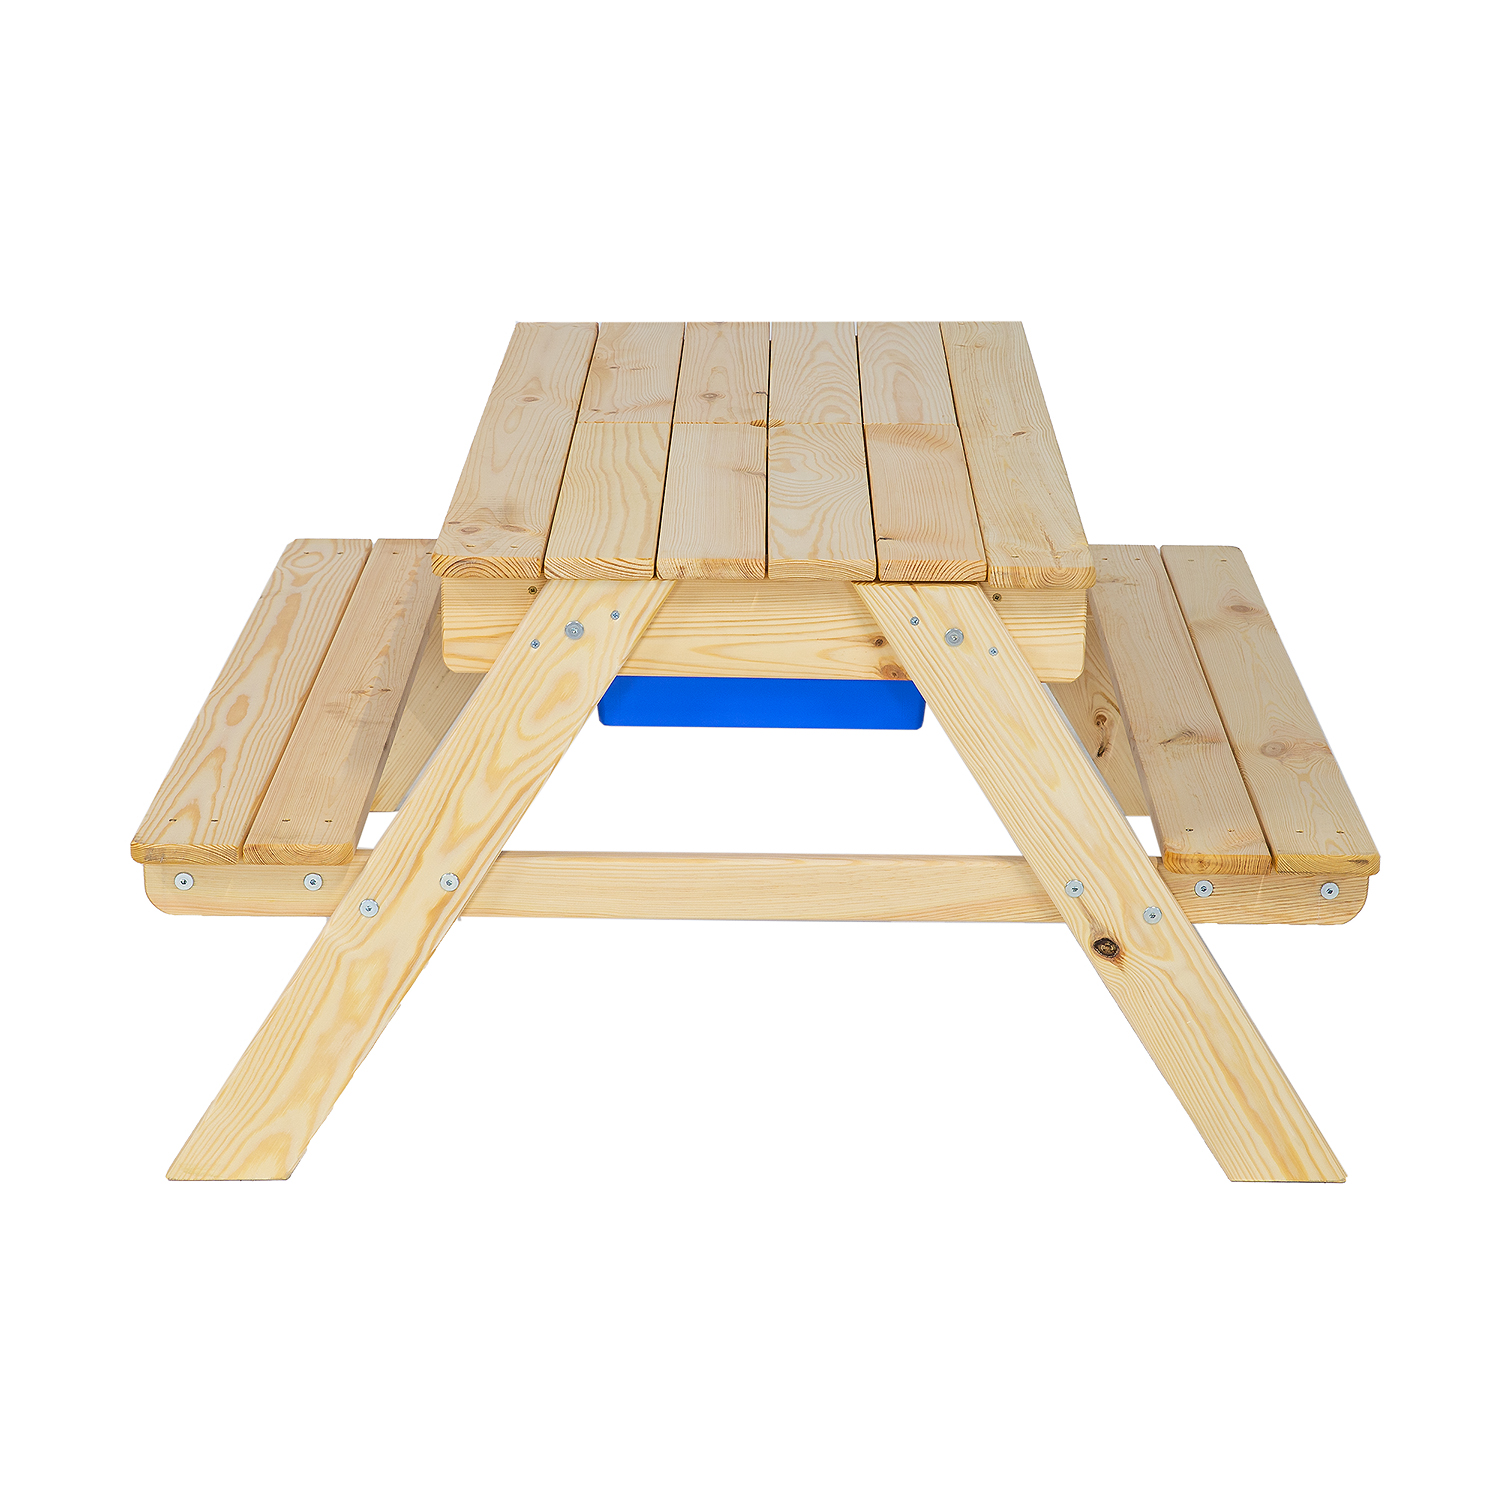 Zahradní dětský stůl s lavicemi, smrkové dřevo, 94x50x94 cm, Týk